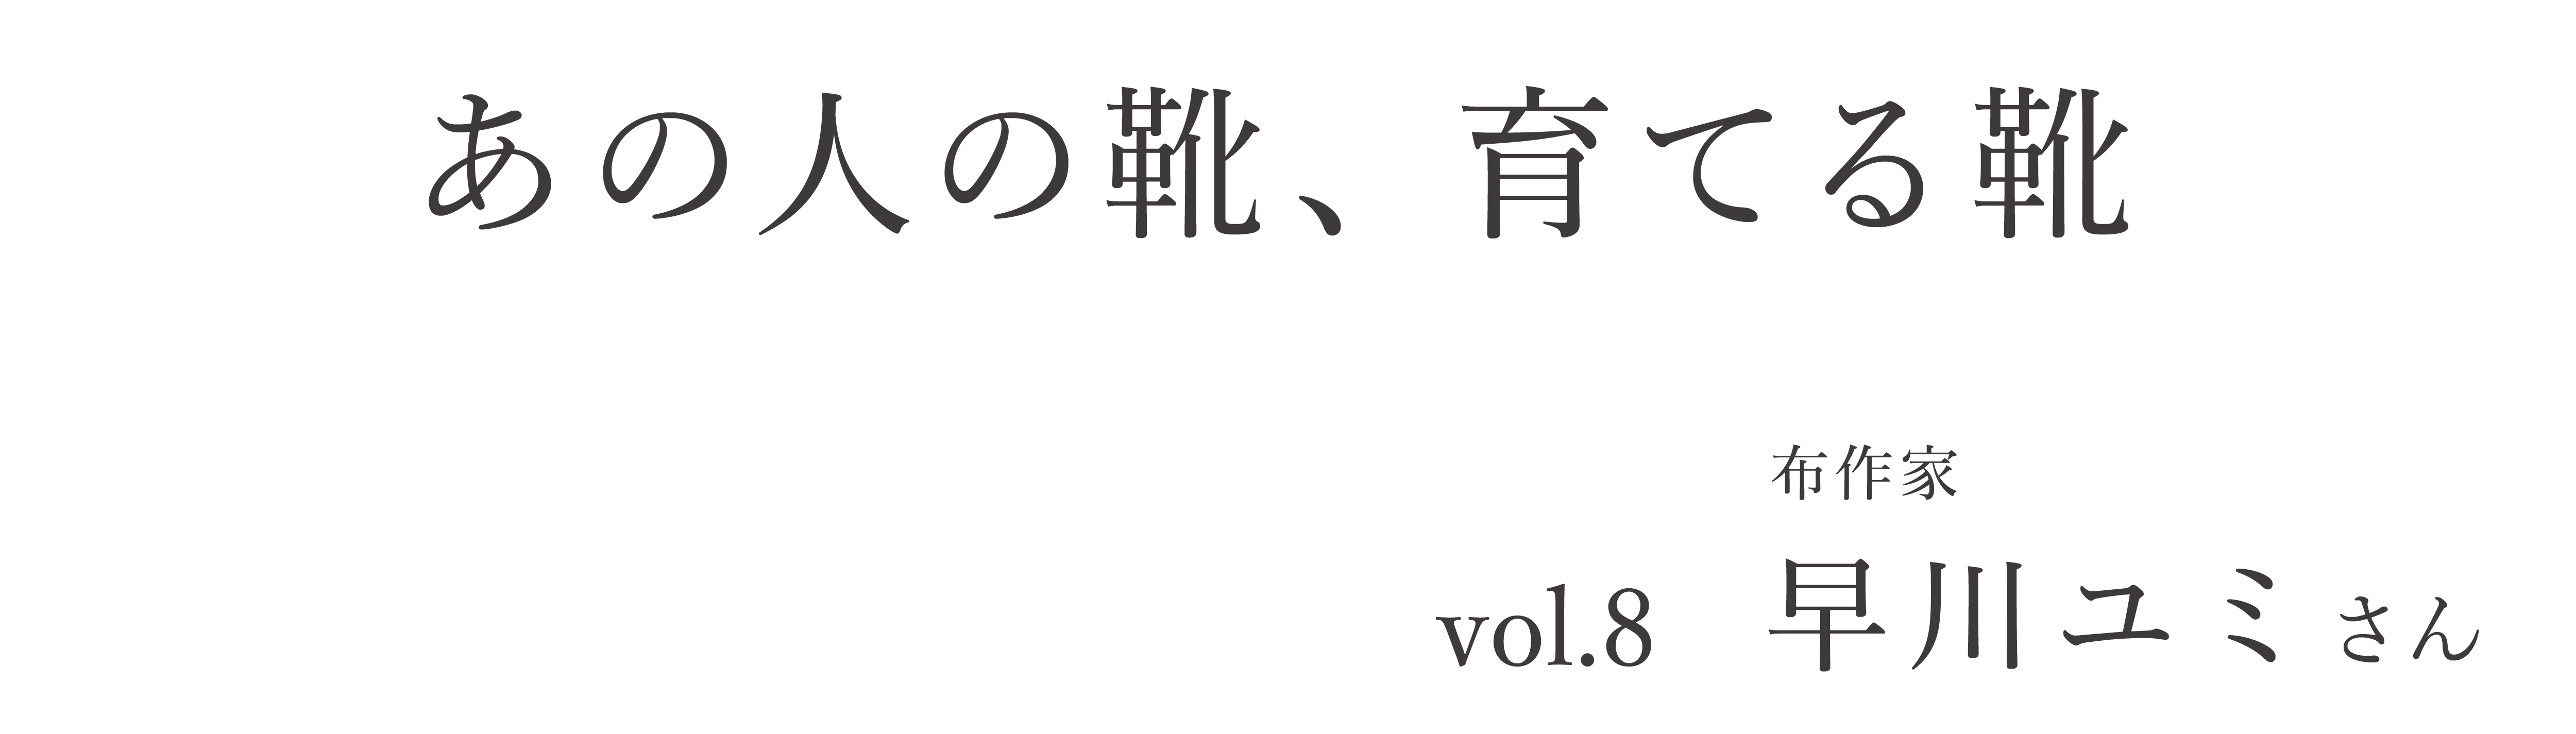 あの人の靴、育てる靴 Vol.8 早川ユミさん | NAOT ナオトジャパン